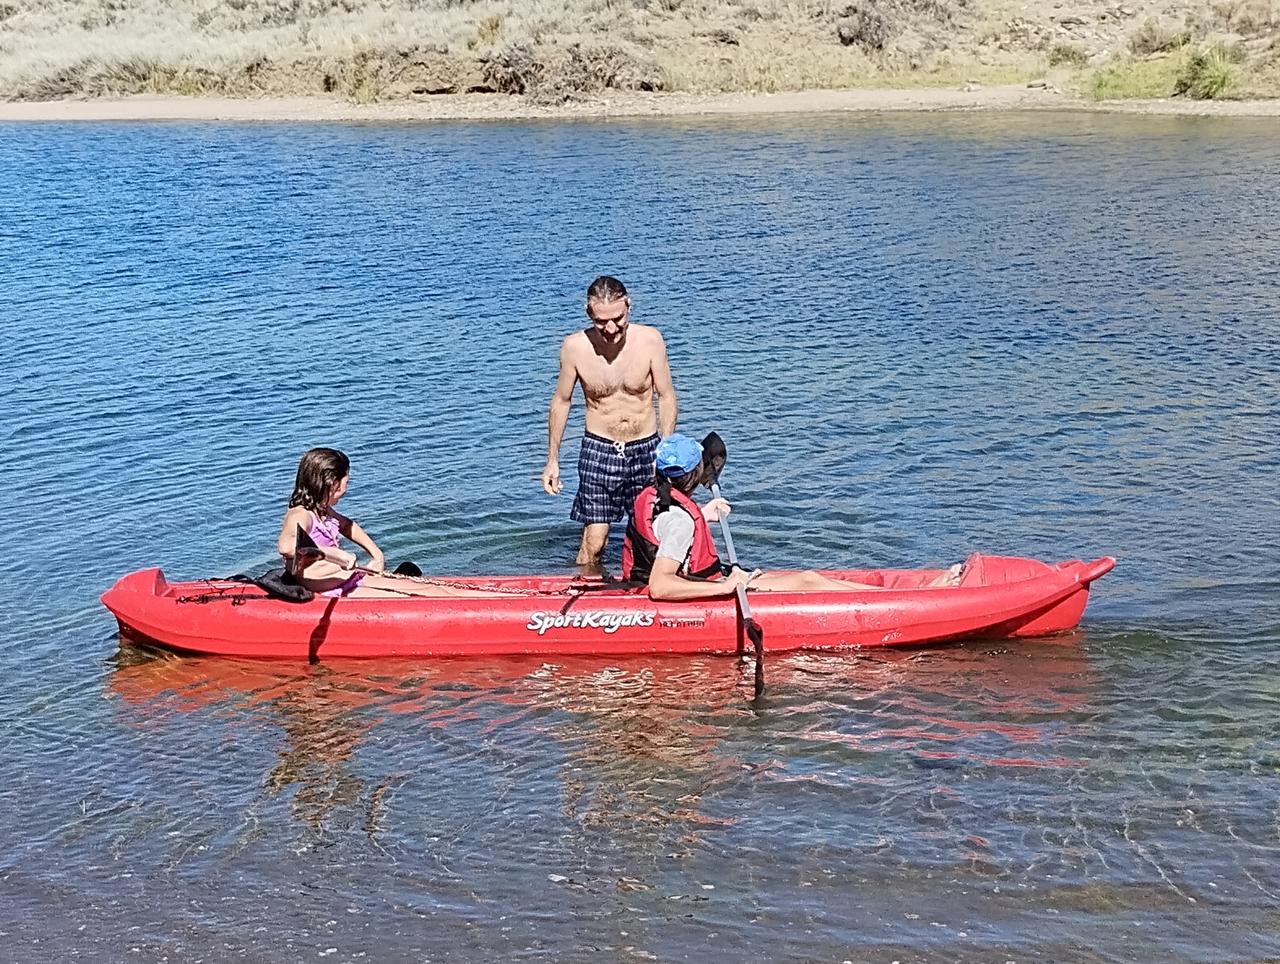 Les chiques aprendiendo kayak con el tío Gustavo